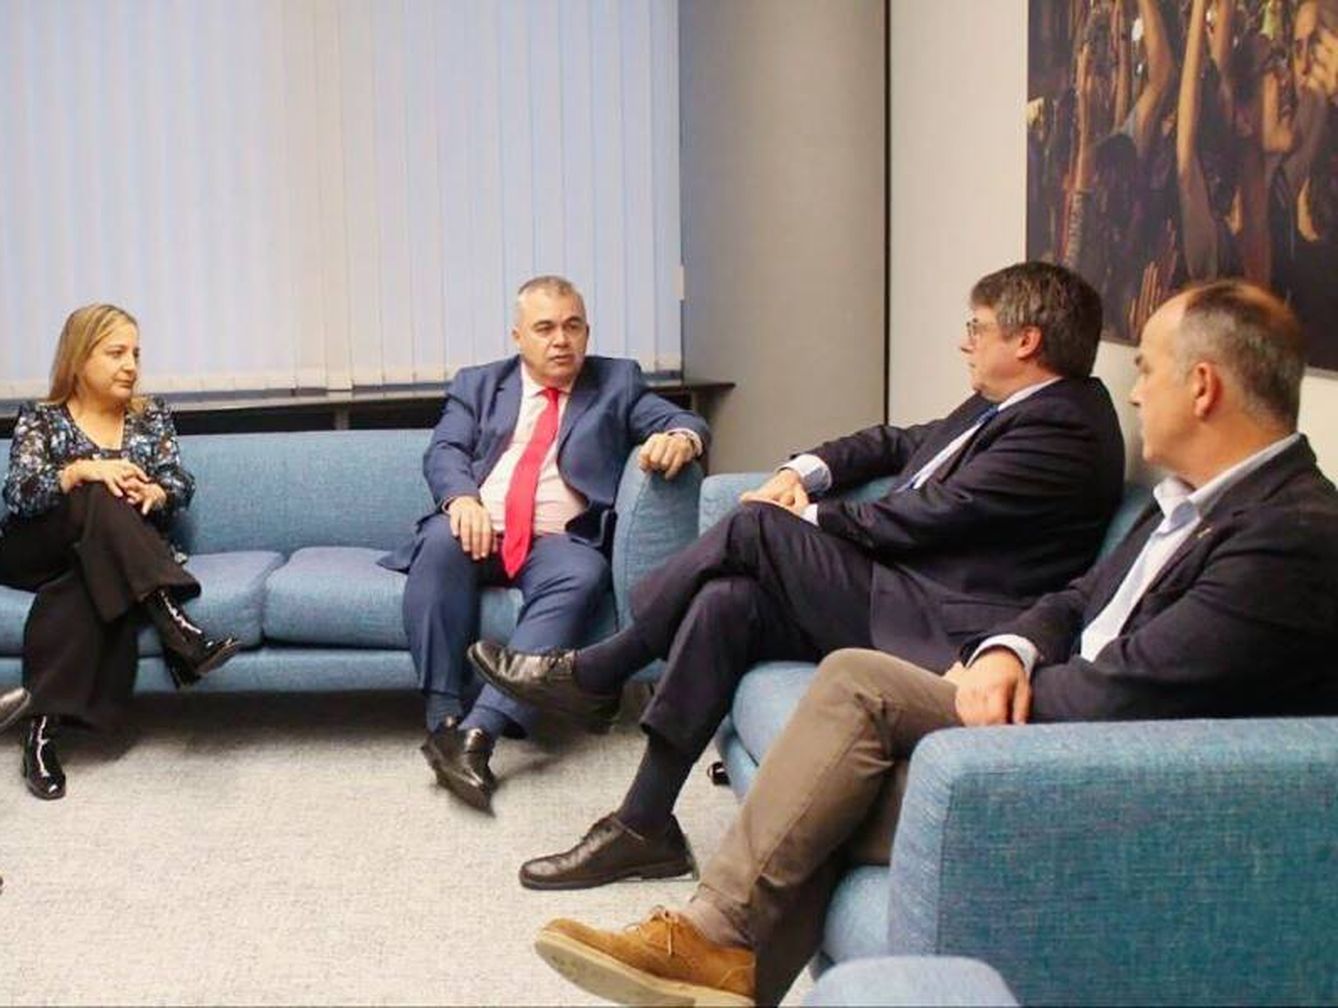 Santos Cerdán y Carles Puigdemont en la sala de espera. (EFE)